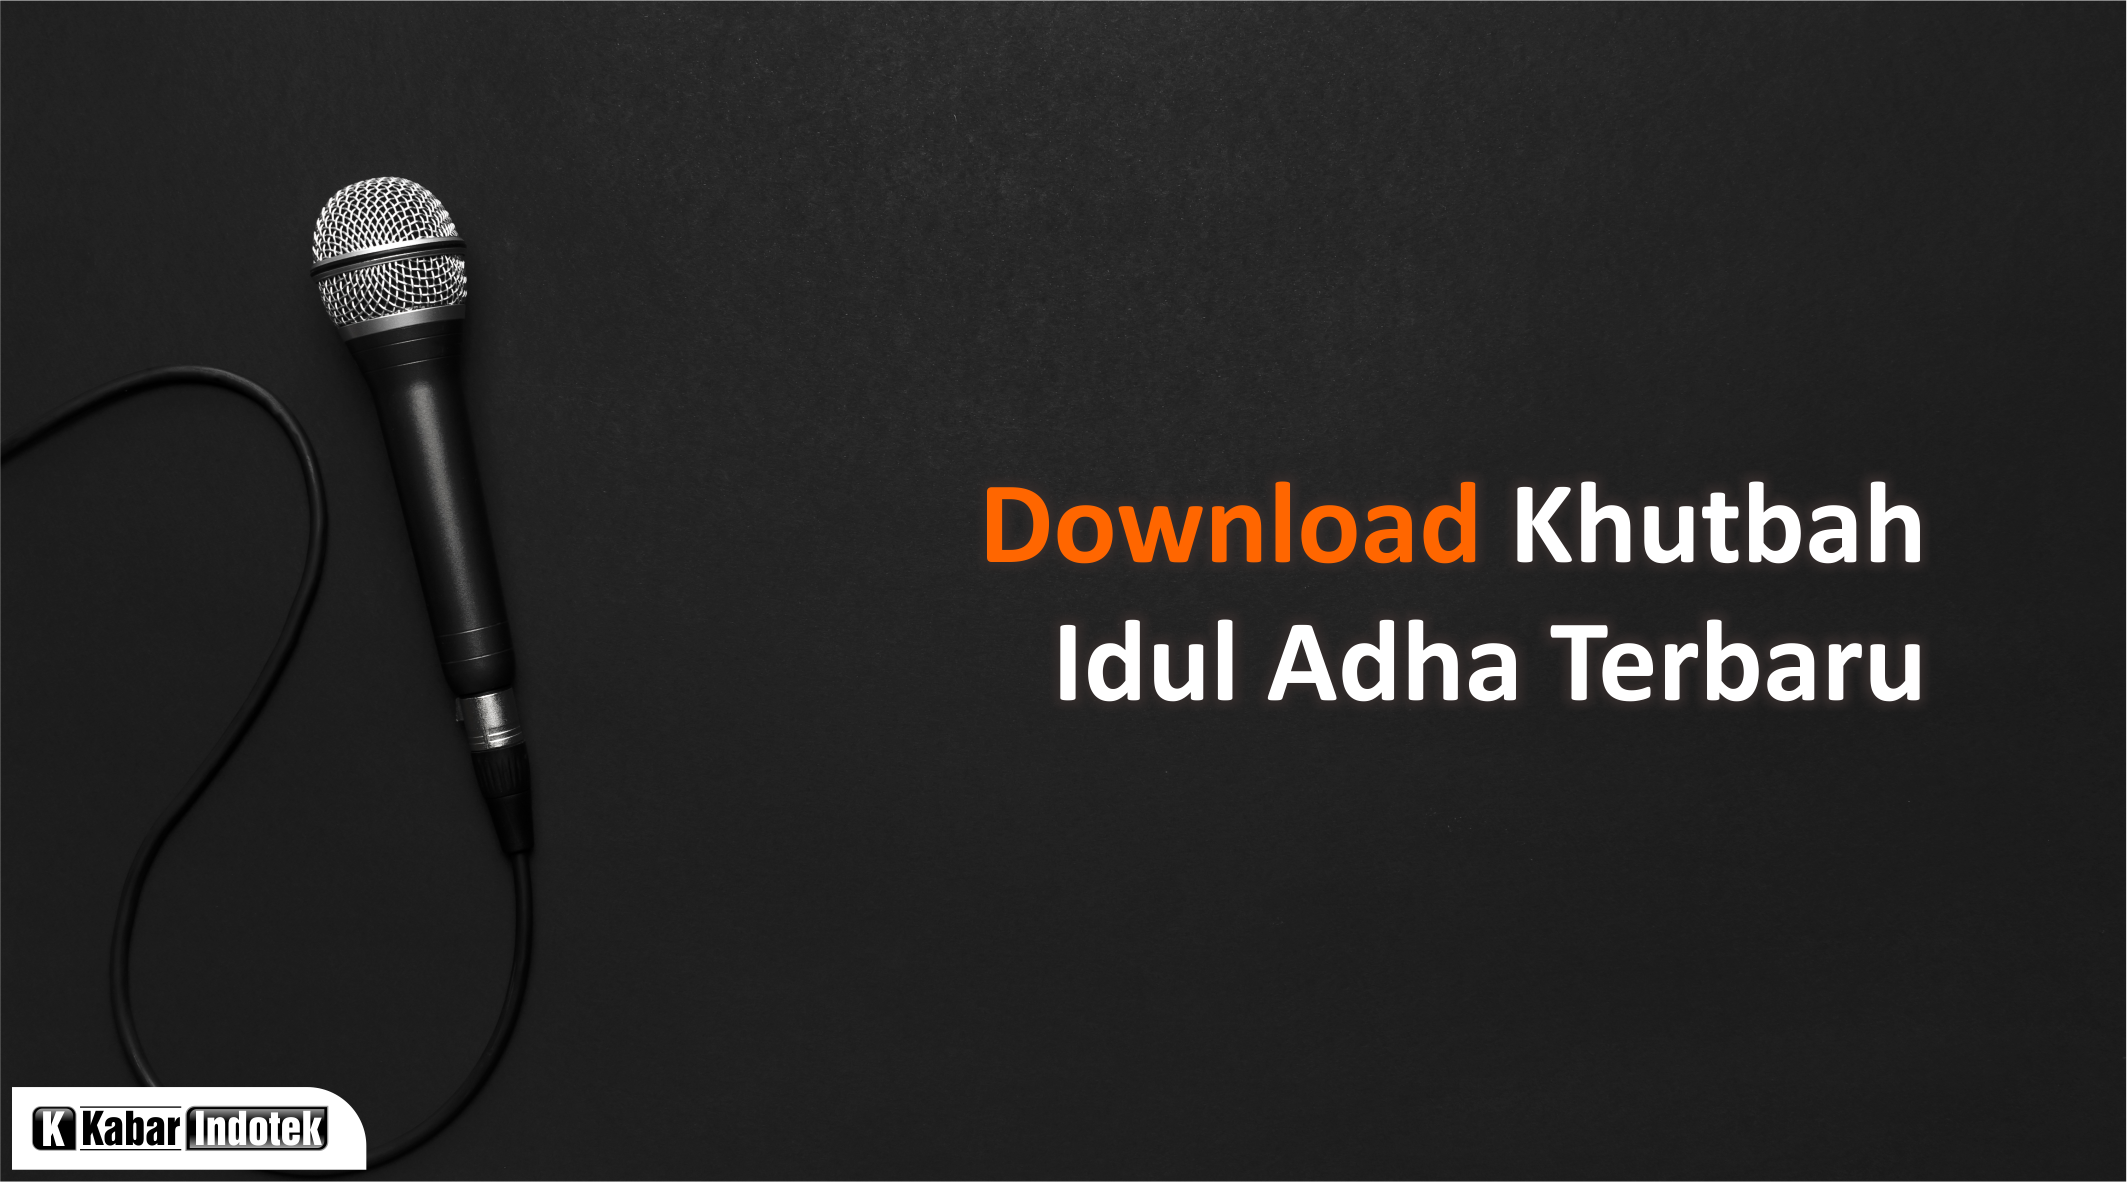 Download khutbah idul adha 2021 pdf